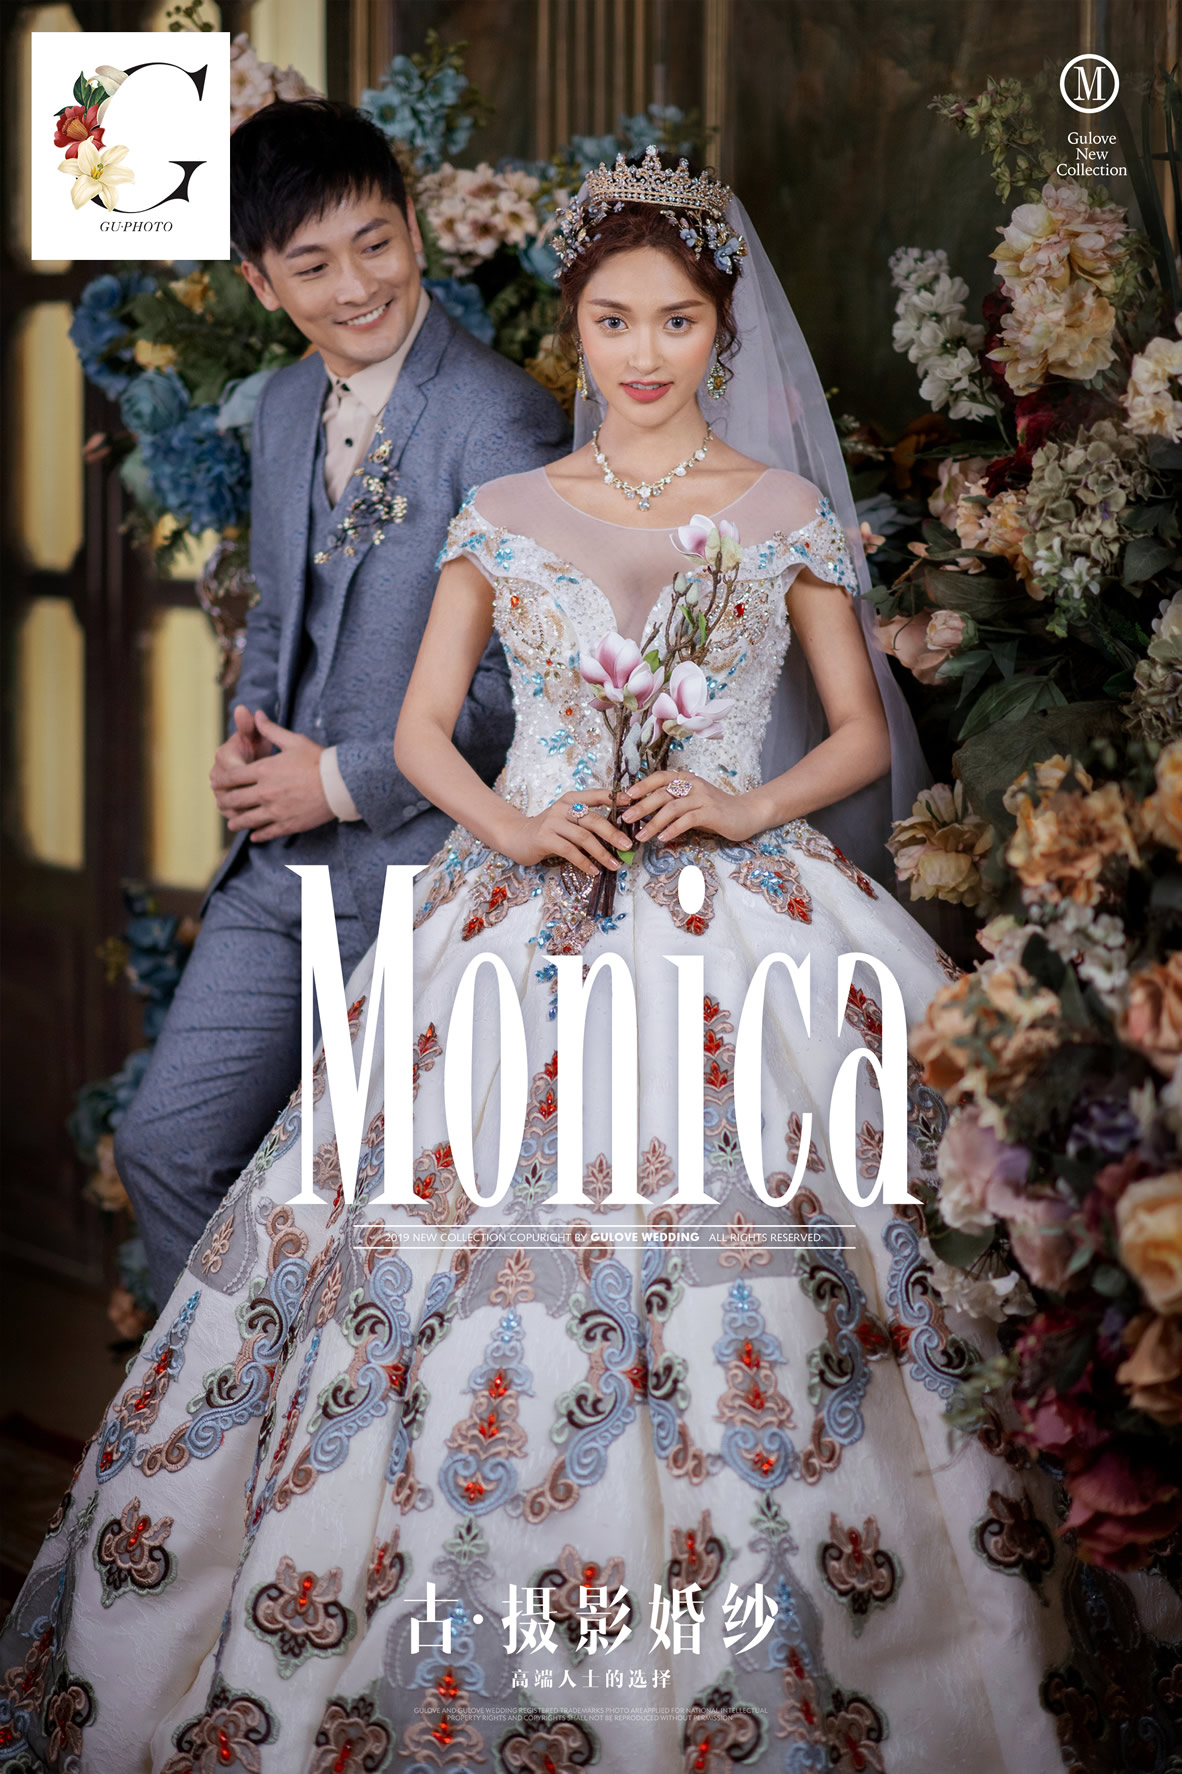 全新《MONICA》系列 - 明星范 - 古摄影婚纱艺术-古摄影成都婚纱摄影艺术摄影网